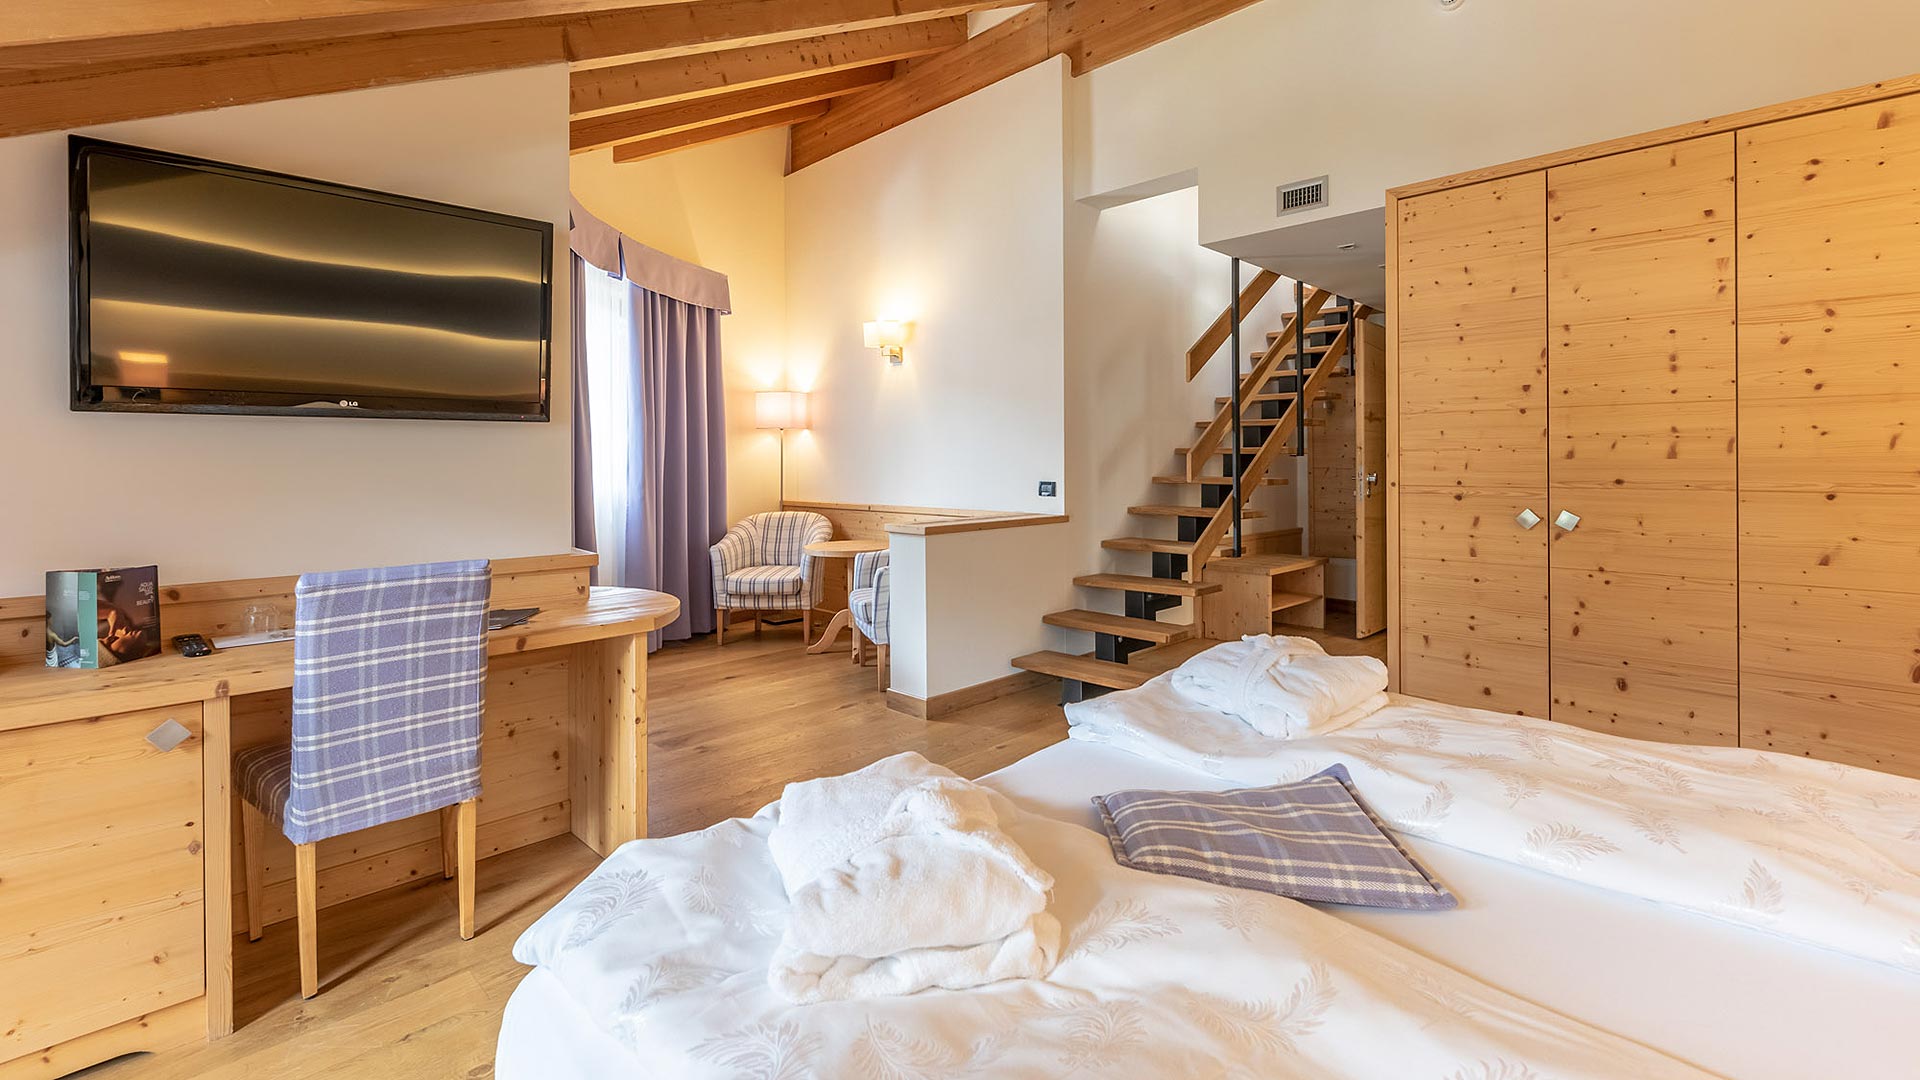 Wenn Sie auf der Suche nach einer komfortablen Unterkunft im Val di Sole sind, besuchen Sie unser Hotel